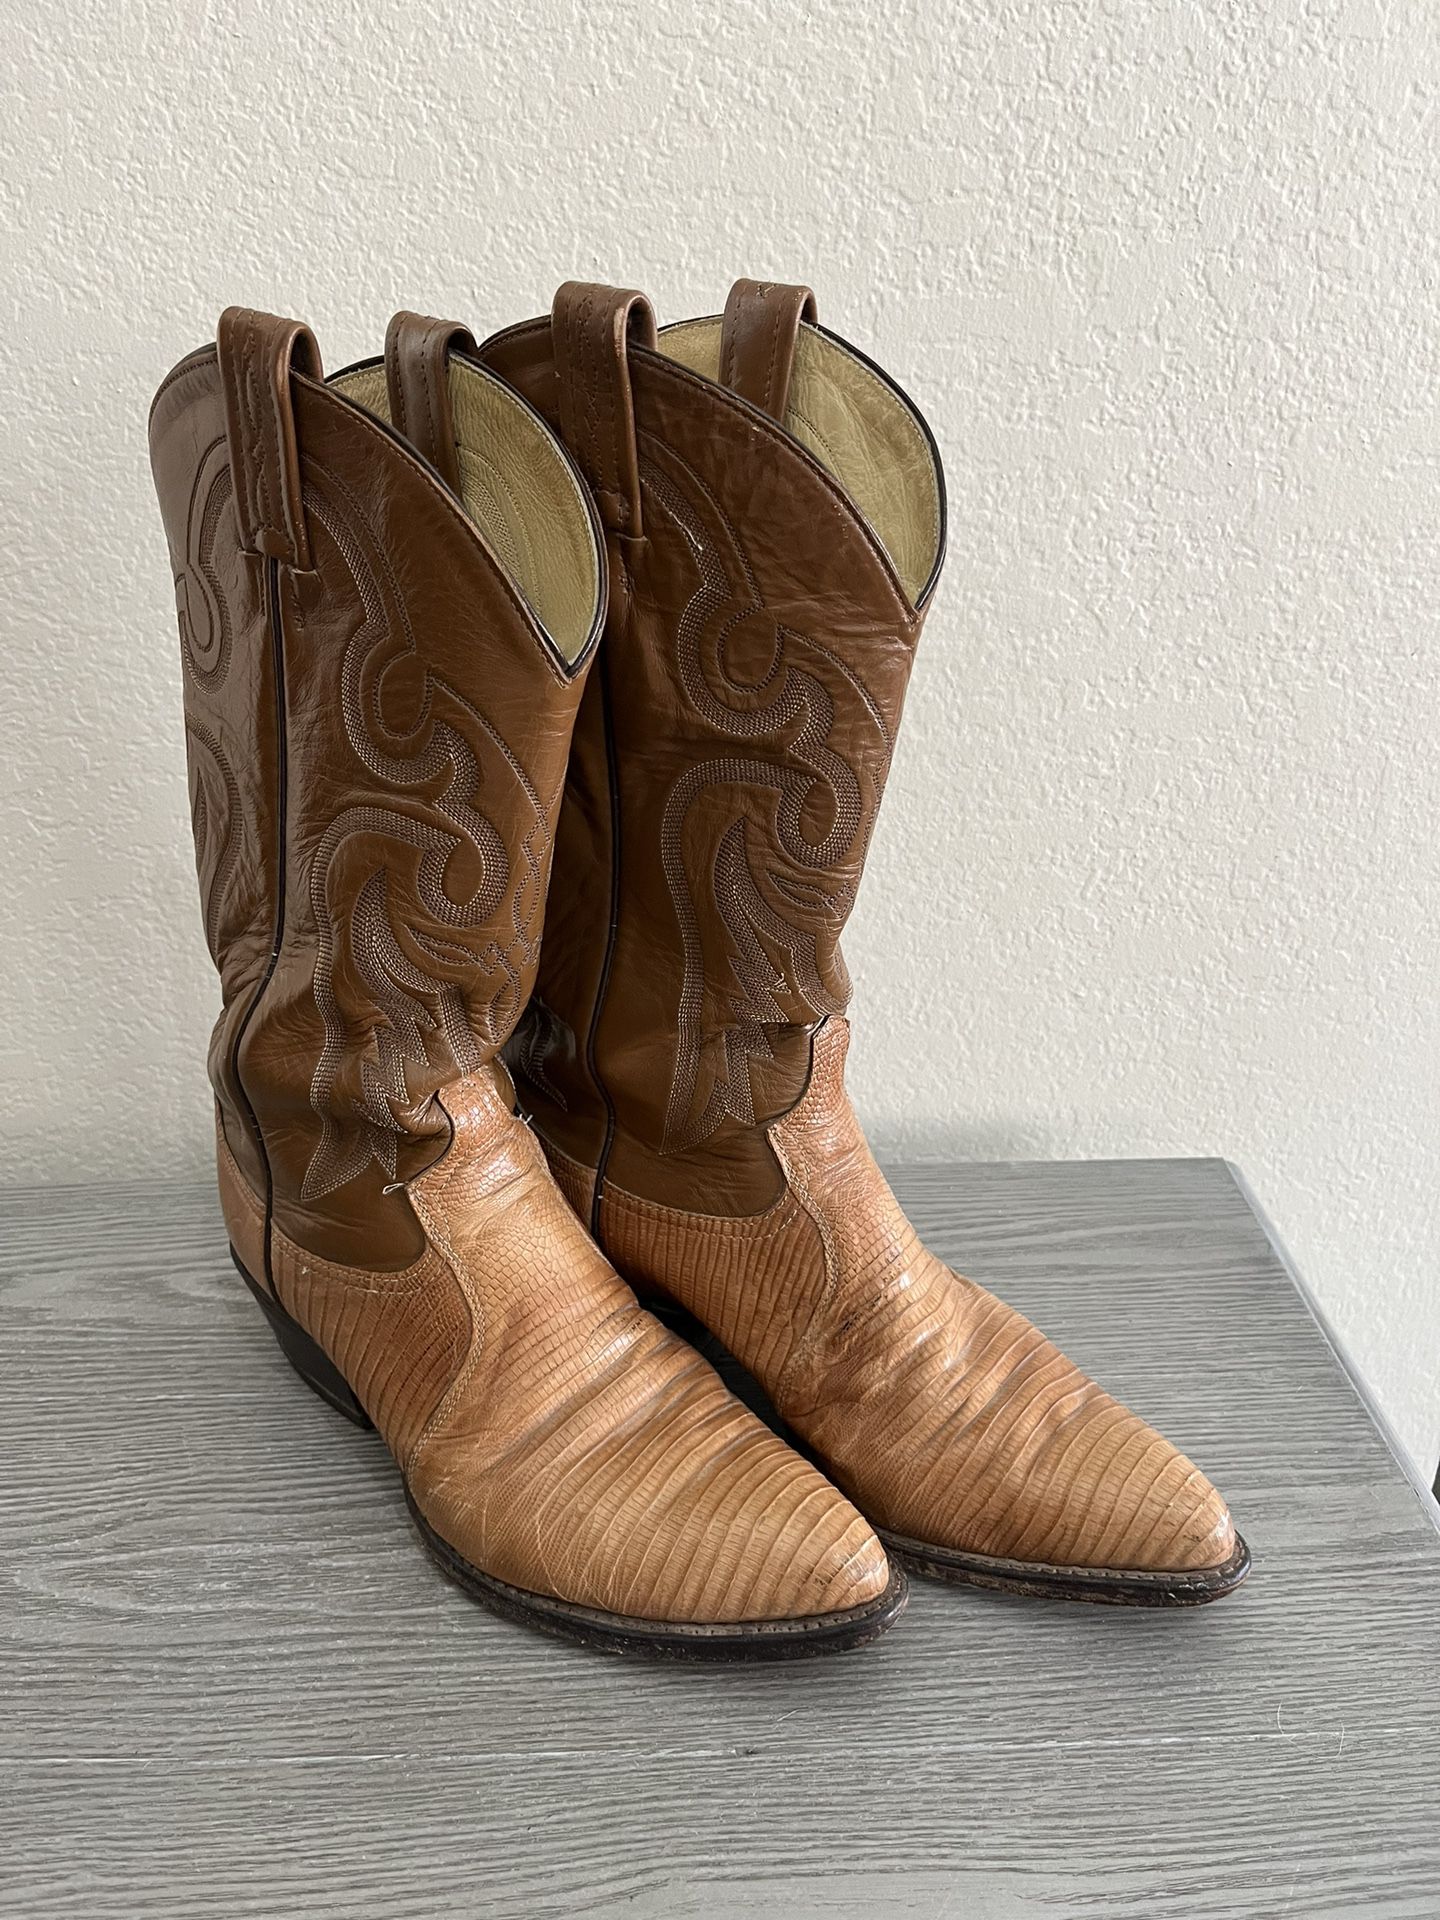 Tony Lama Teju Lizard Brown Cowboy Boots Men’s Size 8.5 D